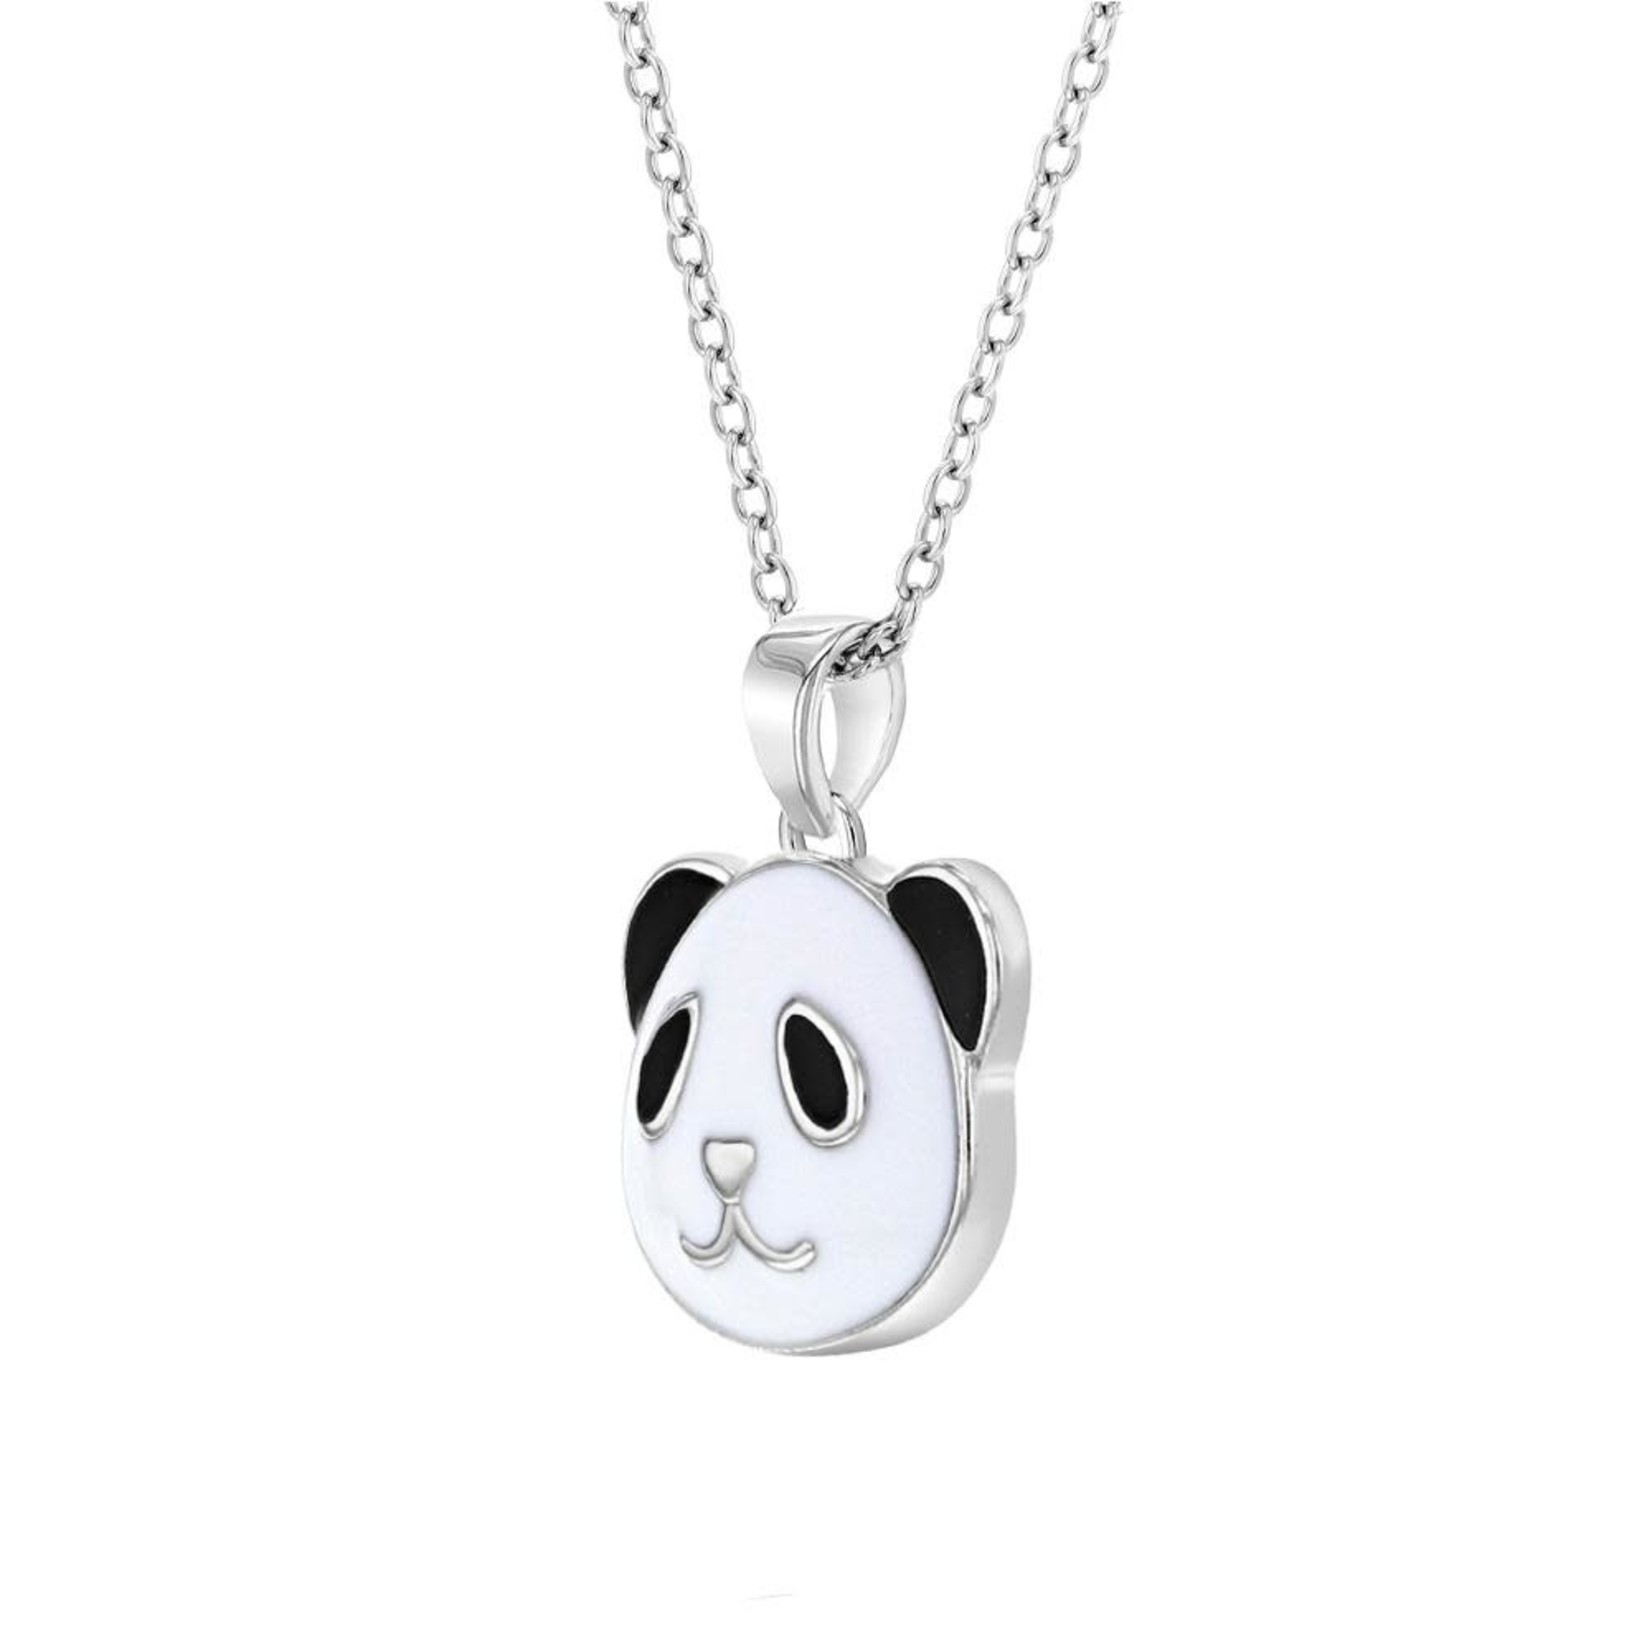 In Season Jewelry Silver Enamel Panda Bear Pendant Charm Necklace